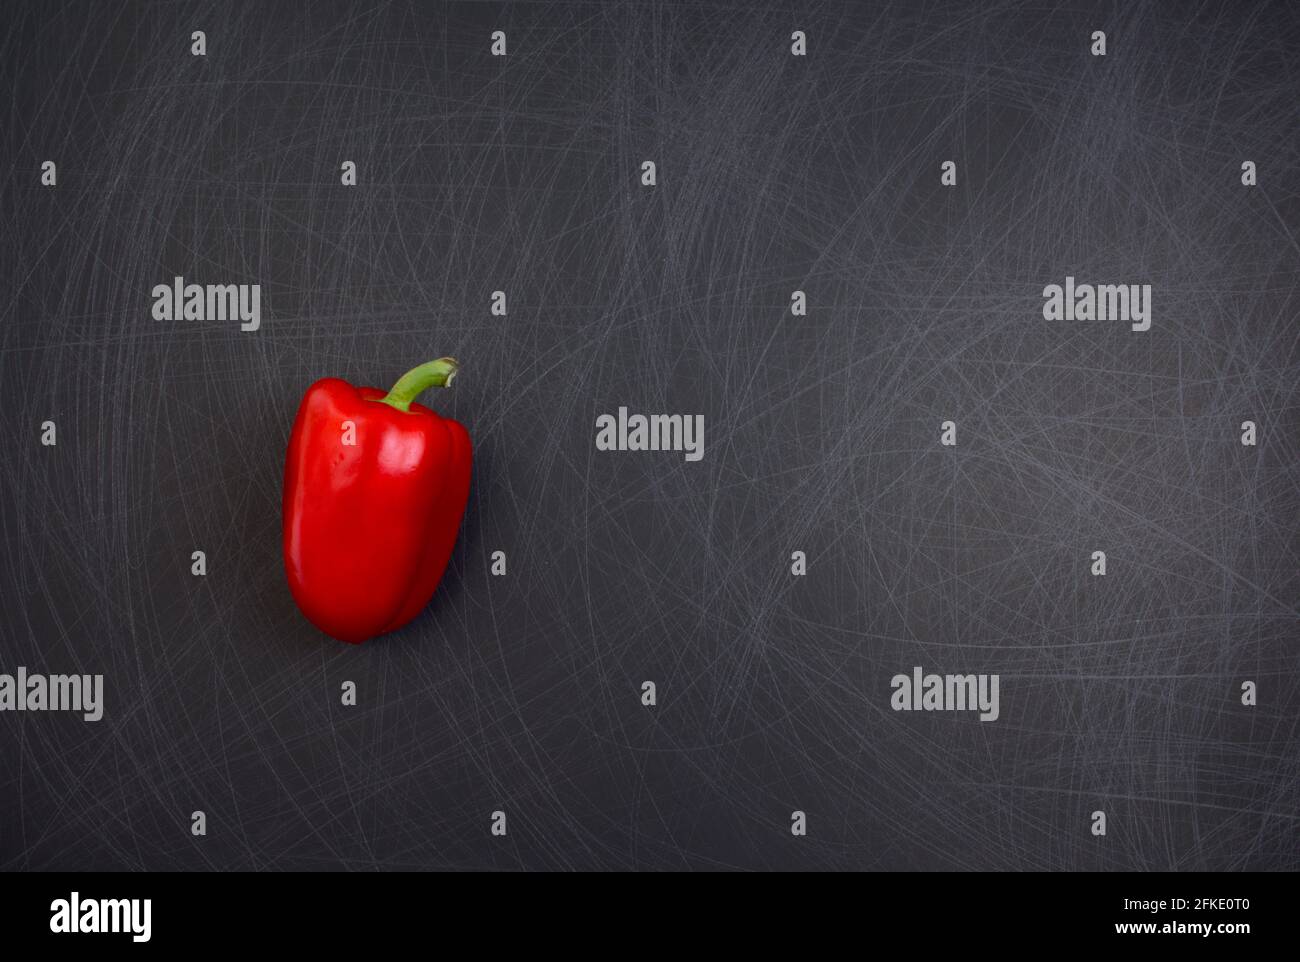 Rote Glocke oder Paprika Gemüse flach lag auf grunge zerkratzt Textur schwarzen Hintergrund. Off-Center mit Kopierplatz, Draufsicht, horizontales Bild. Stockfoto